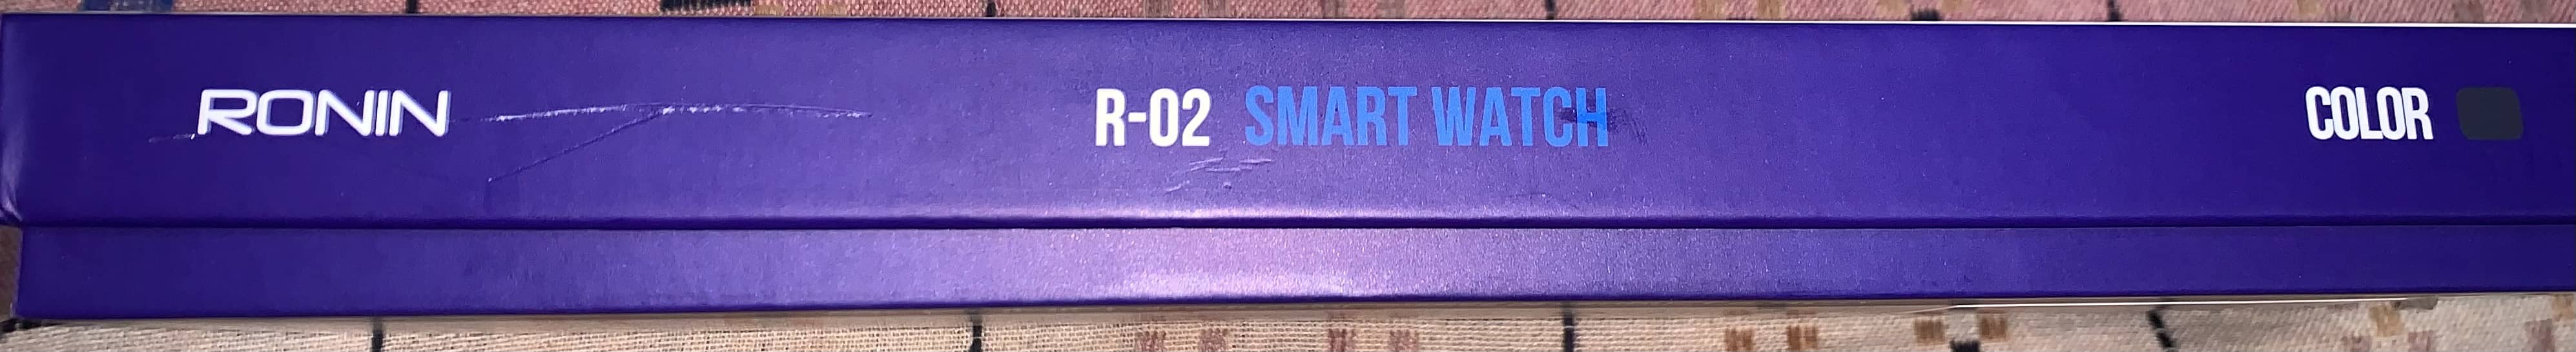 RONIN R-02 SMART WATCH 5